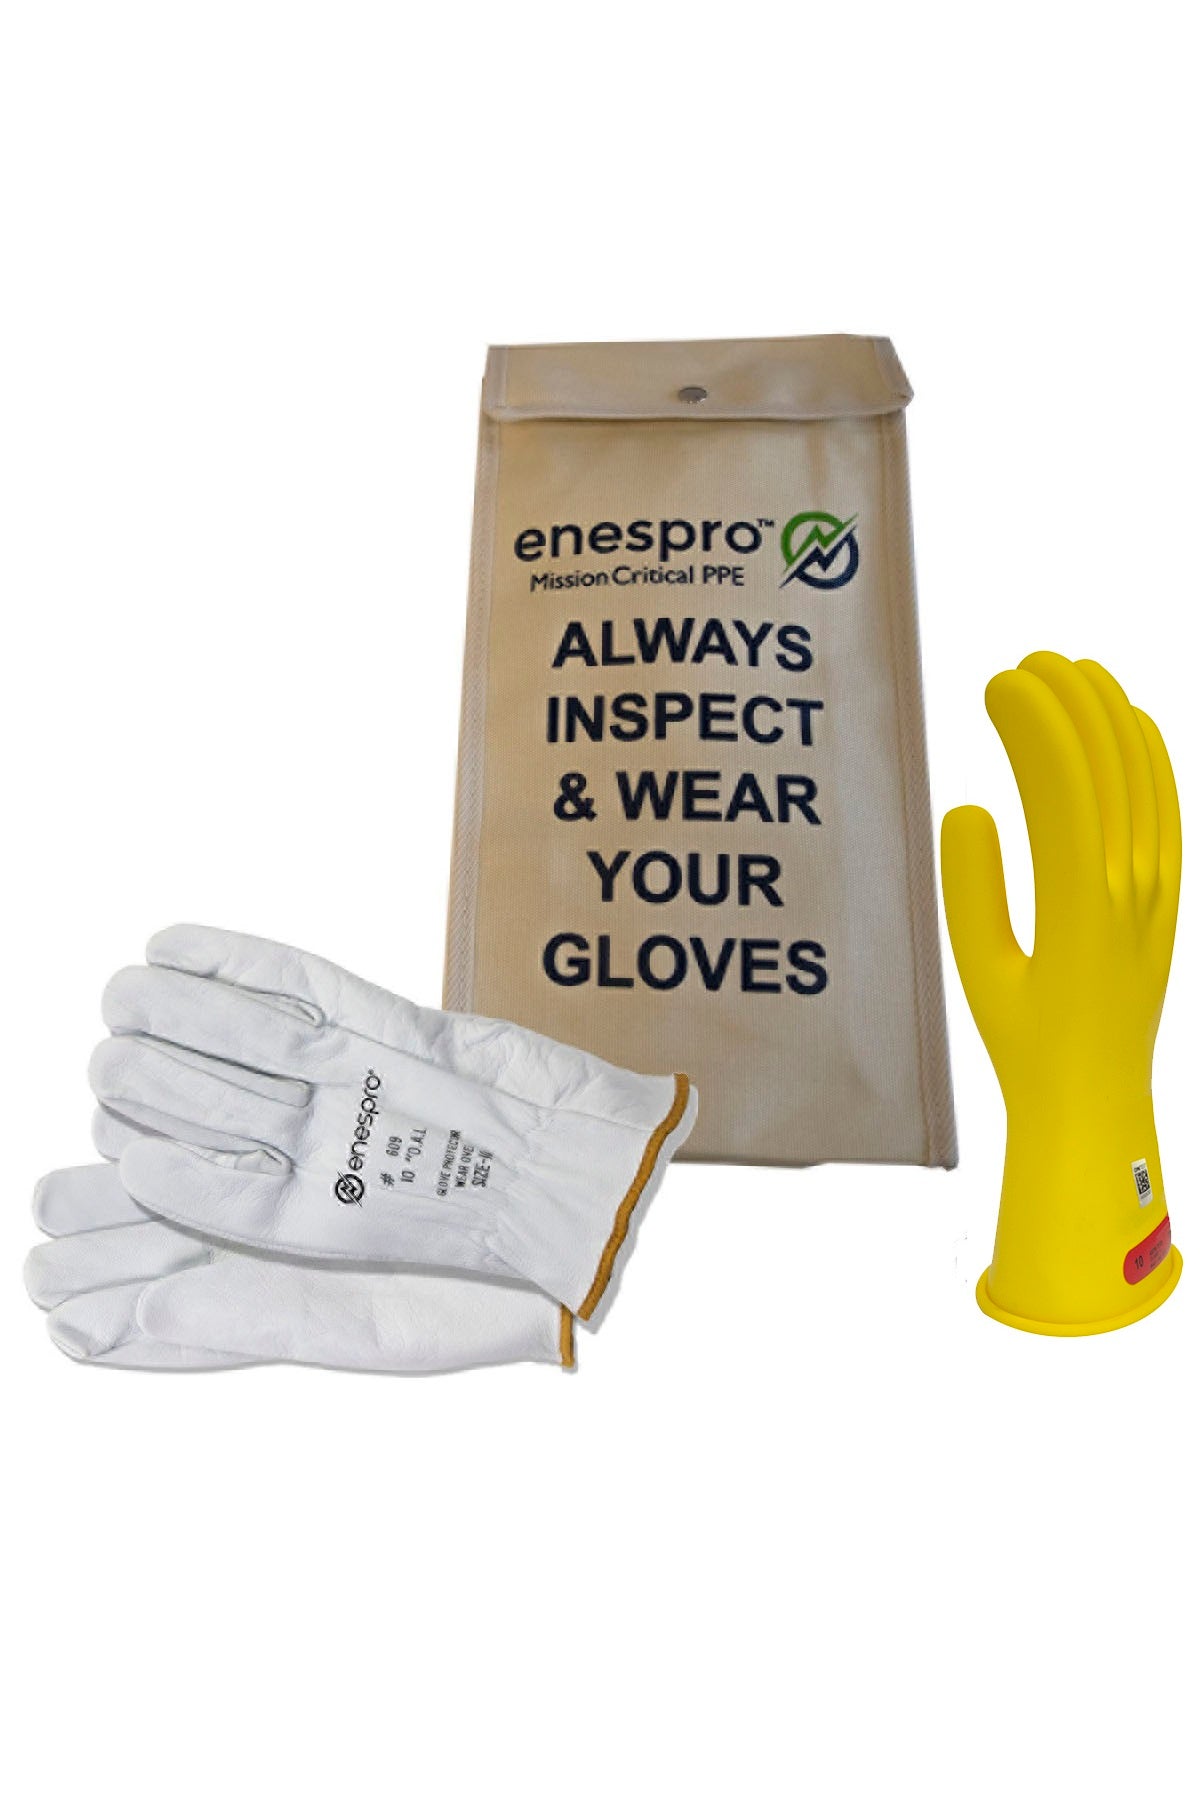 Enespro Class 0 Voltage 11" Glove Kit